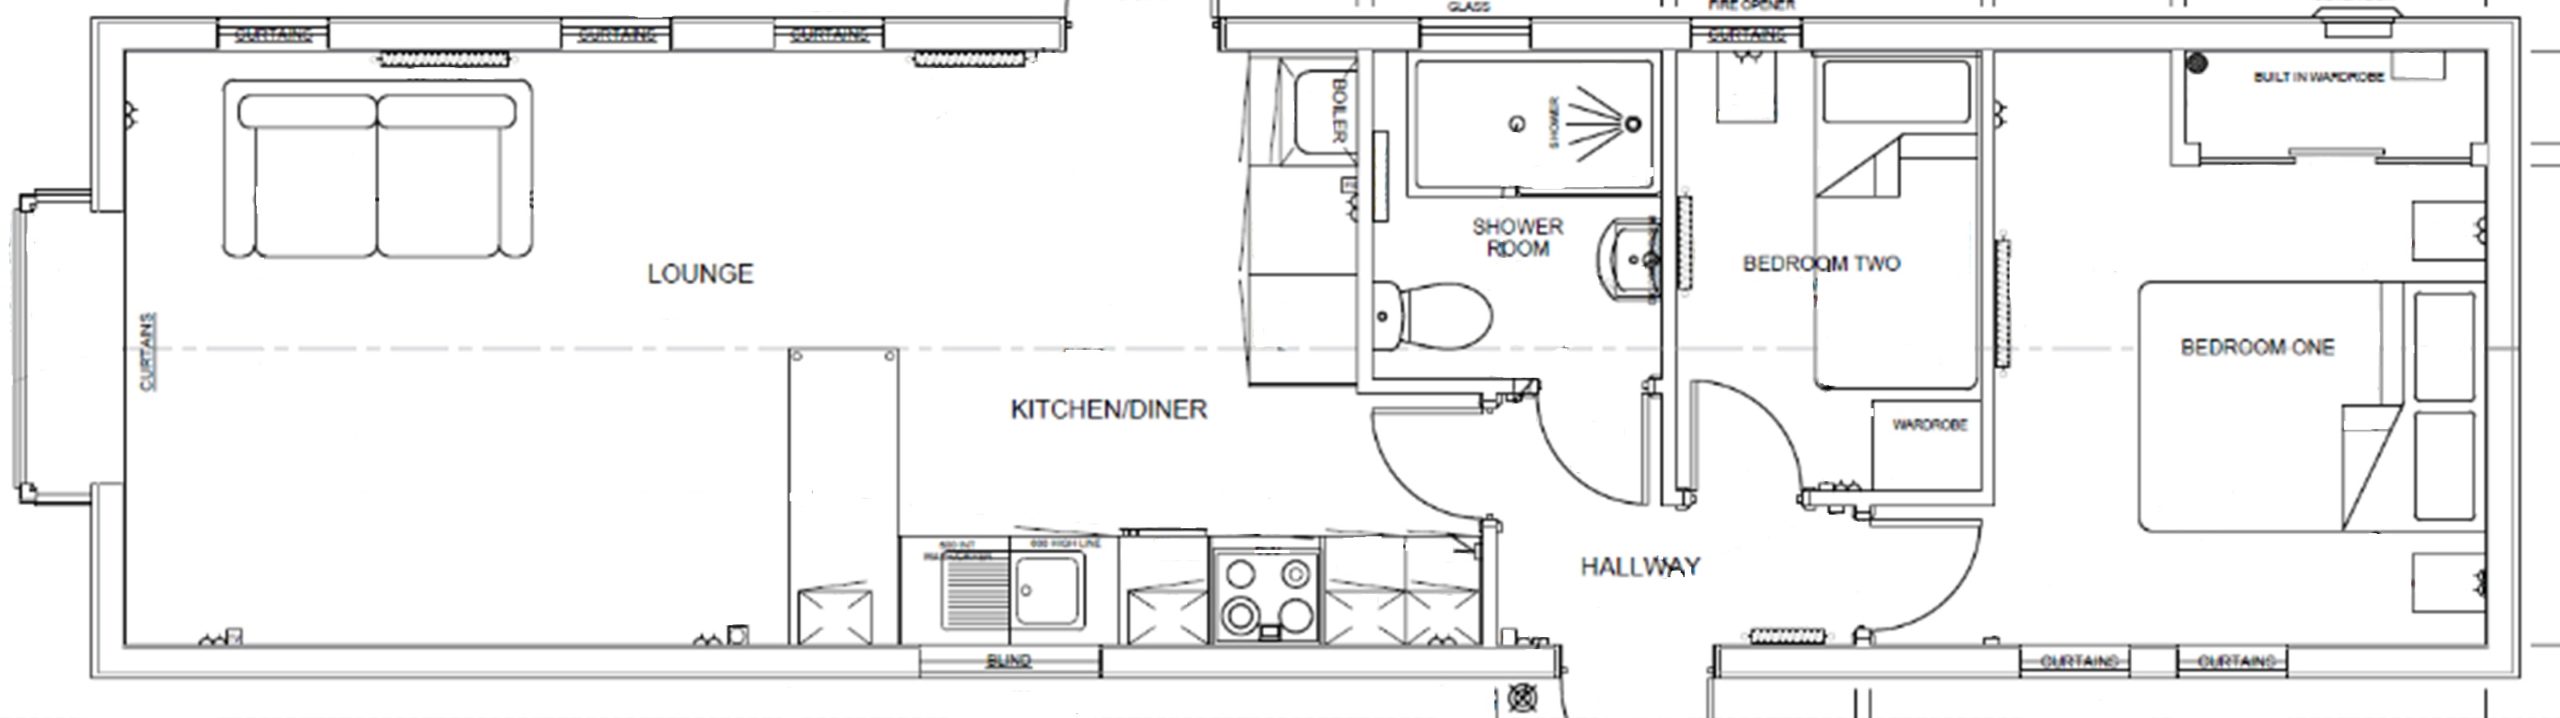 pathfinder custom floor plan in black and white